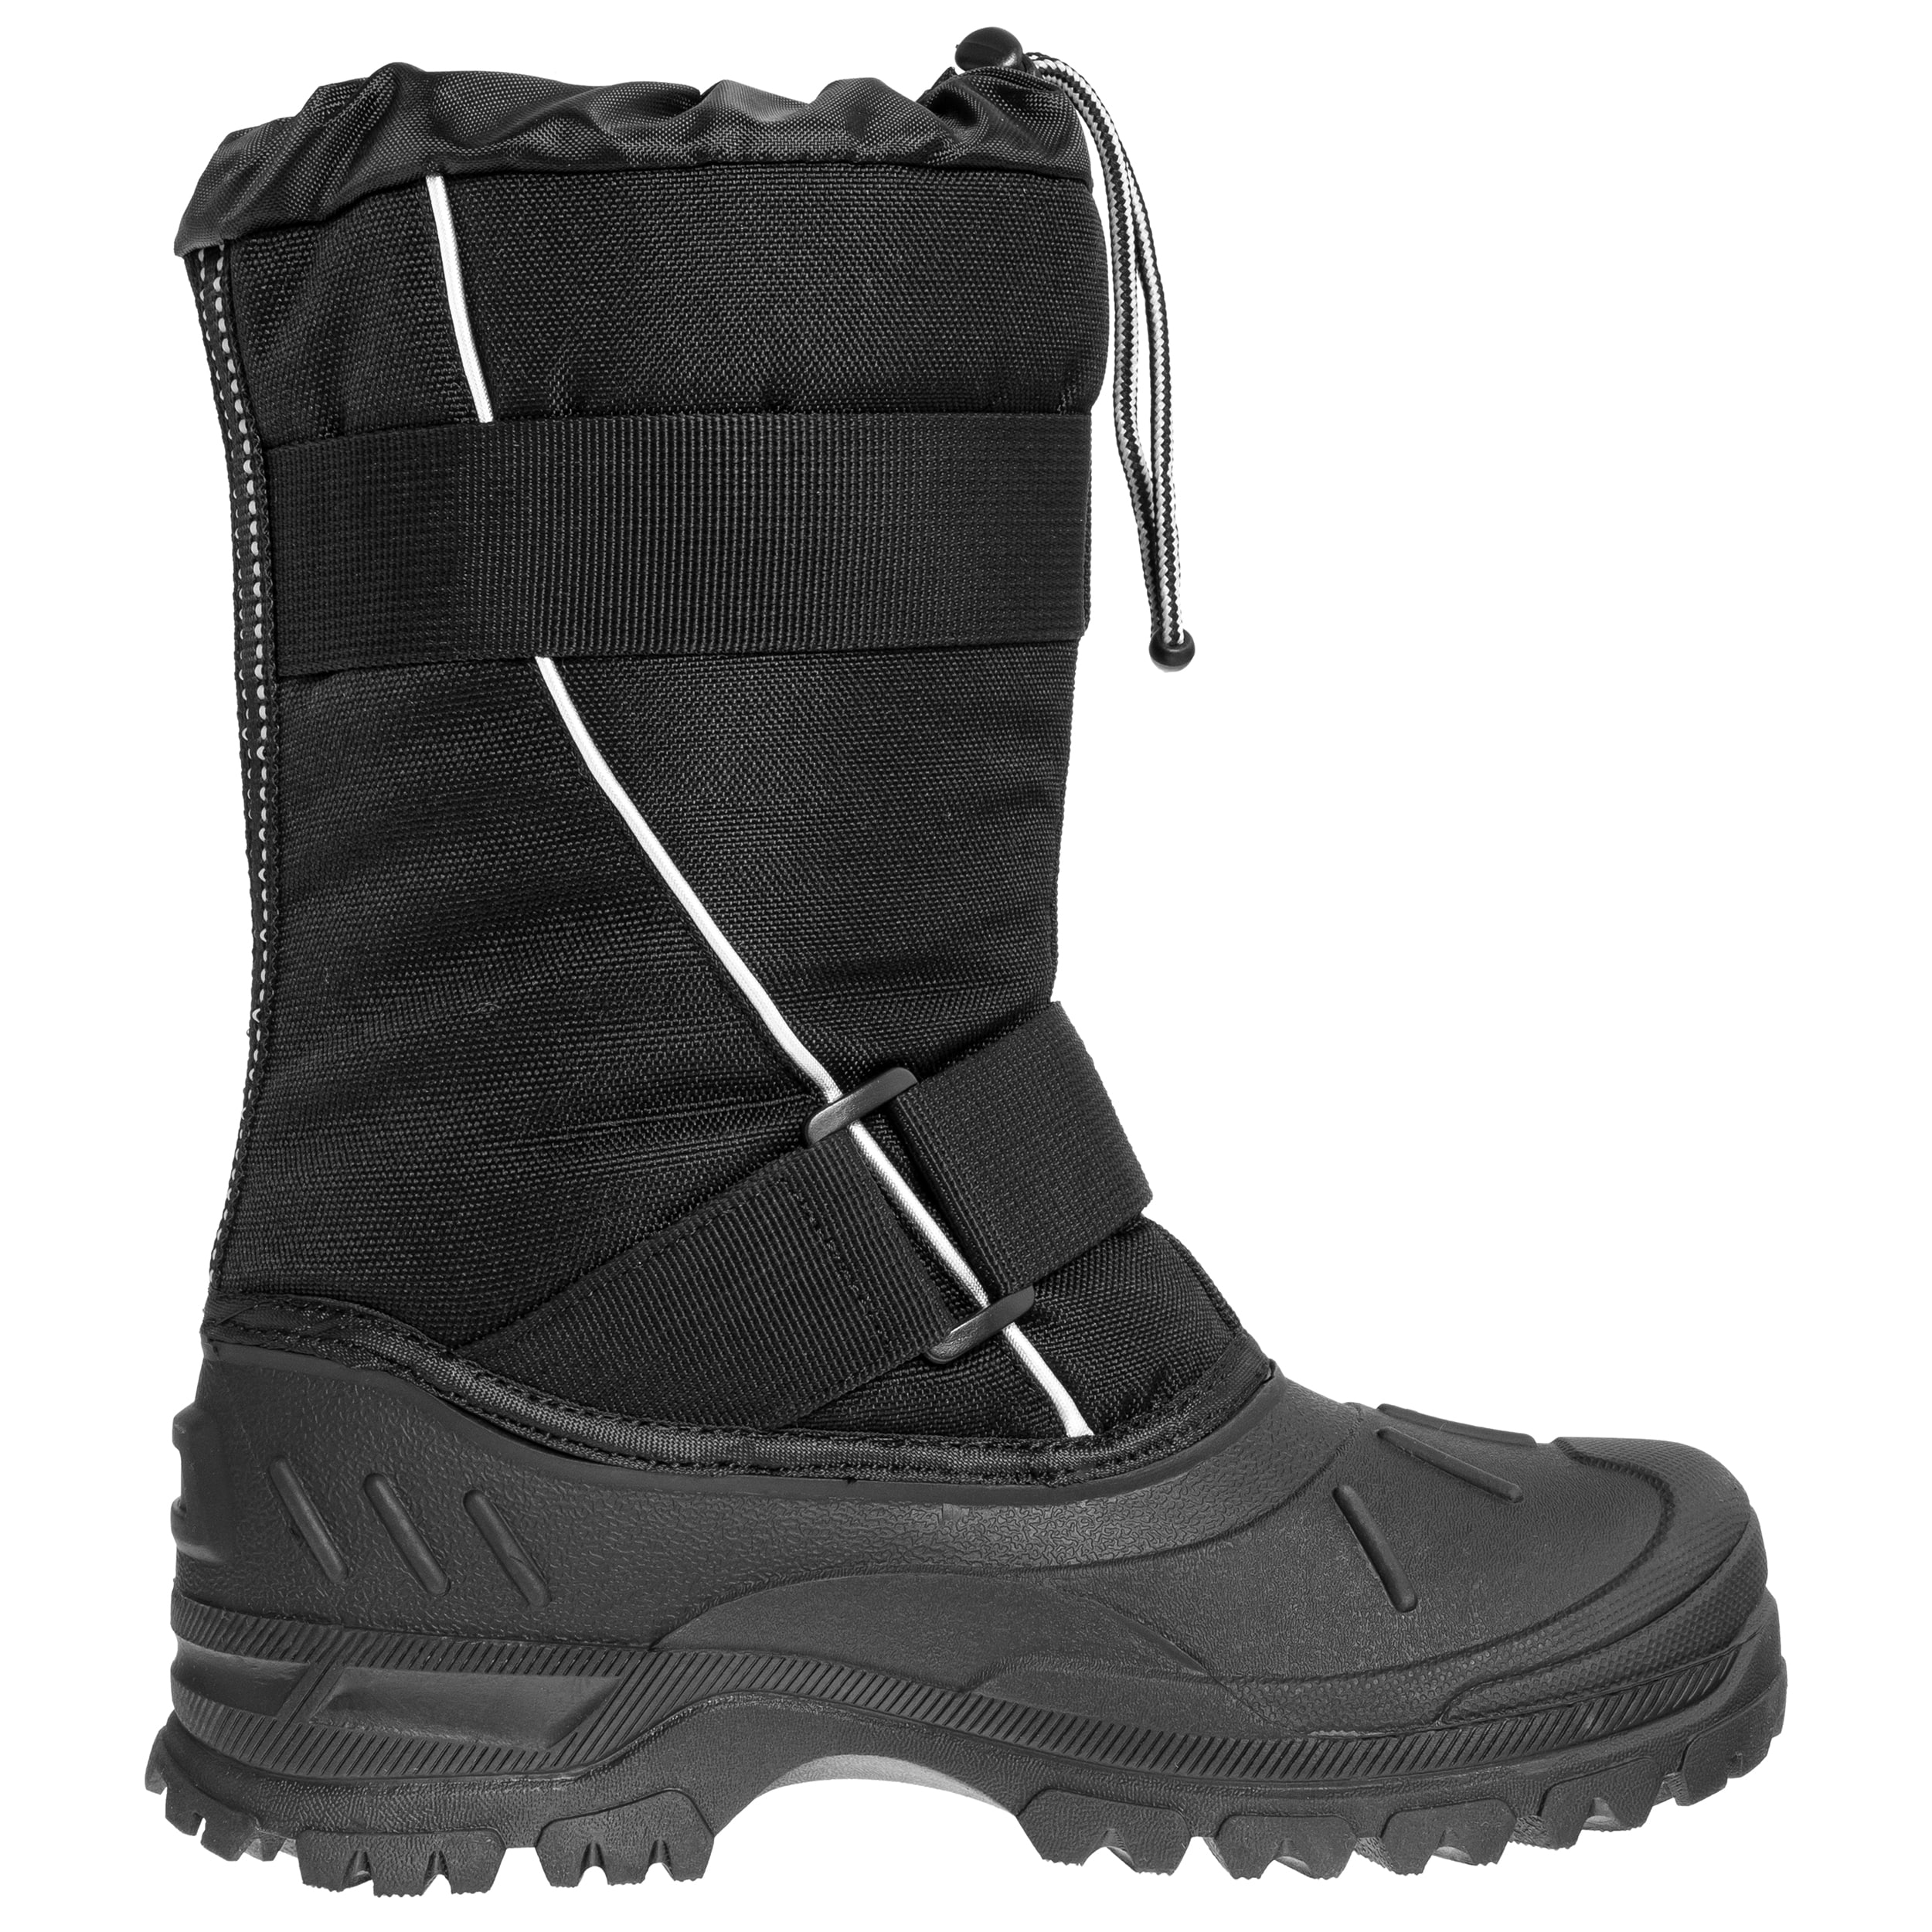 Снігові чоботи 101 Inc. Cold Weather - Чорний